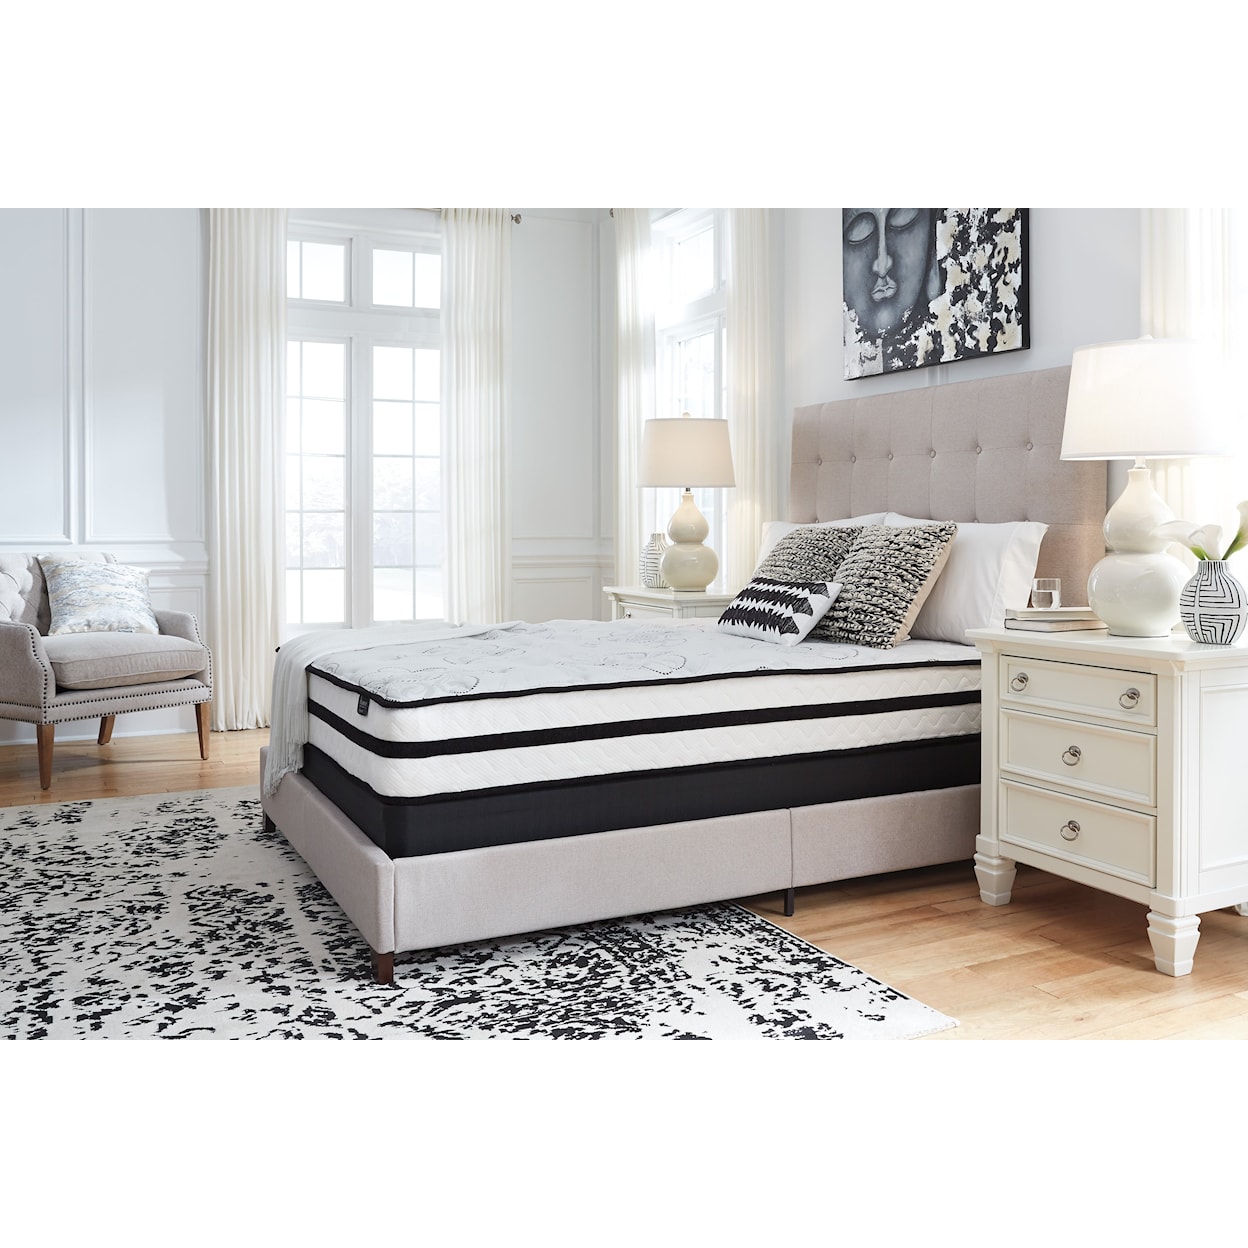 Sierra Sleep Dennison 10" Hybrid Queen Mattress and Pillow